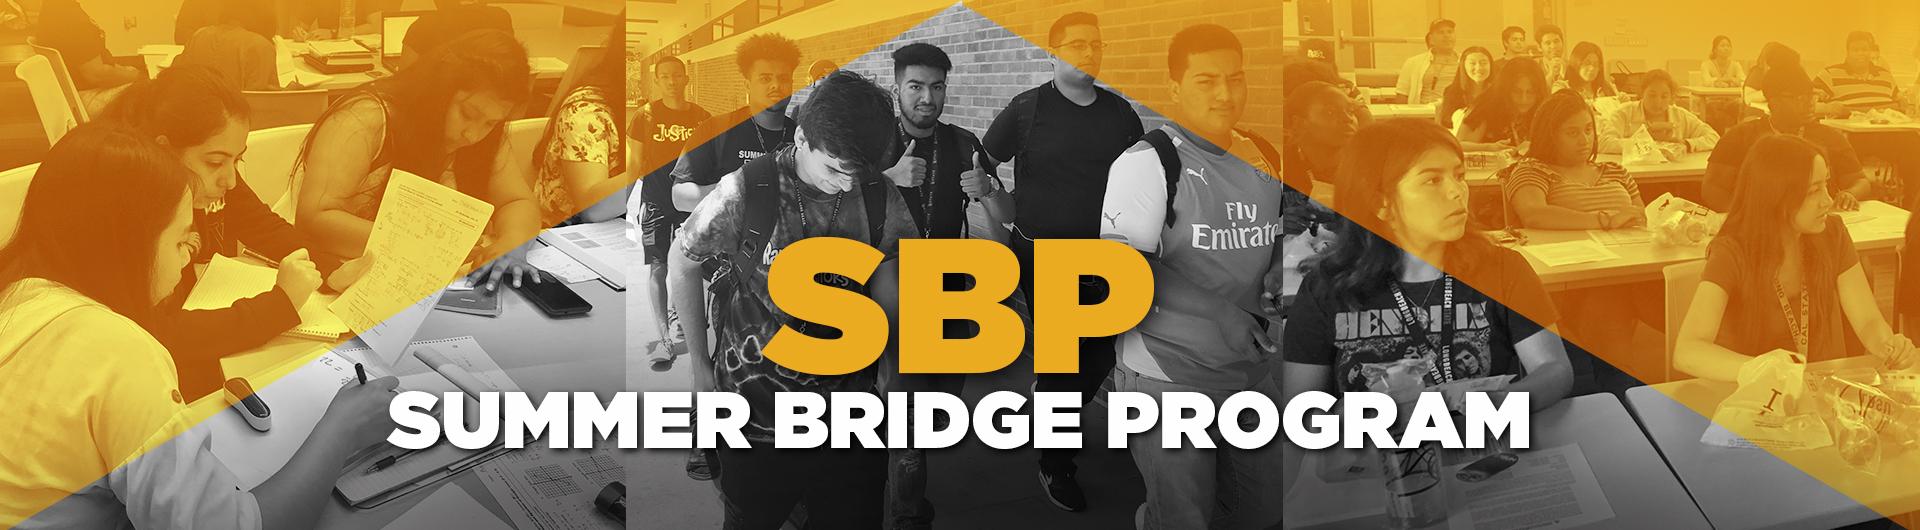 Summer Bridge Program Banner